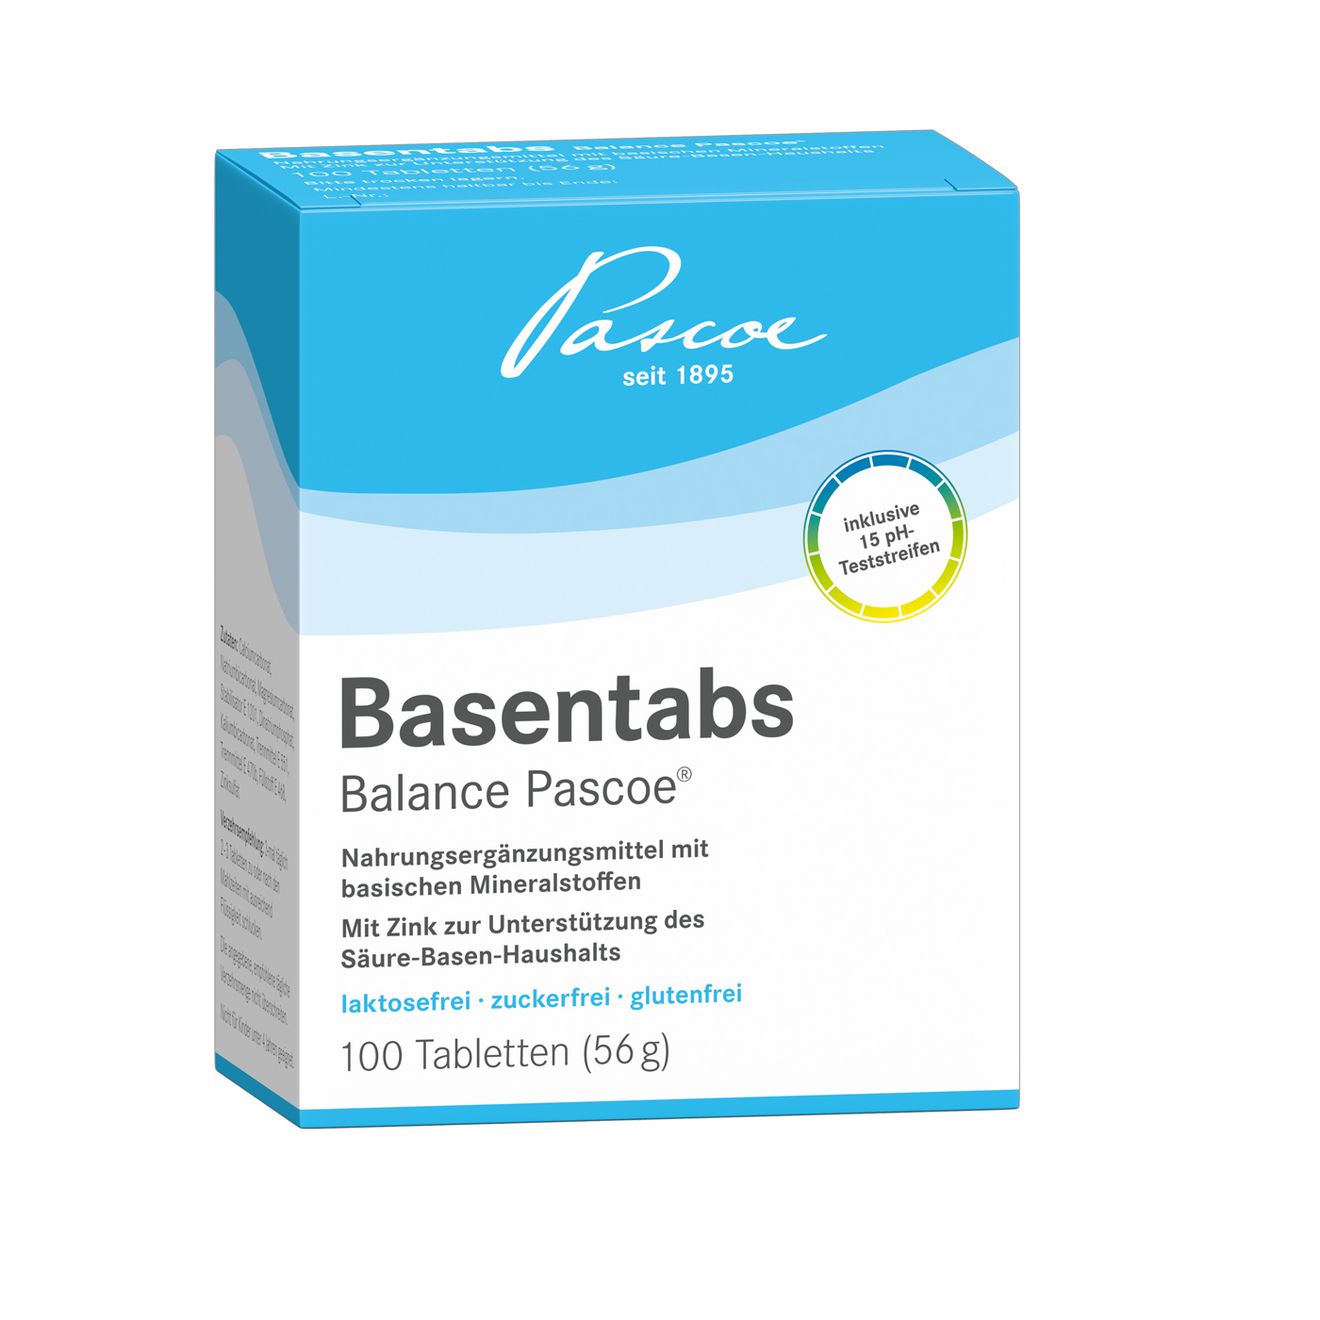 Basentabs pH-balance Pascoe 100 Tabletten Packshot PZN 02246478